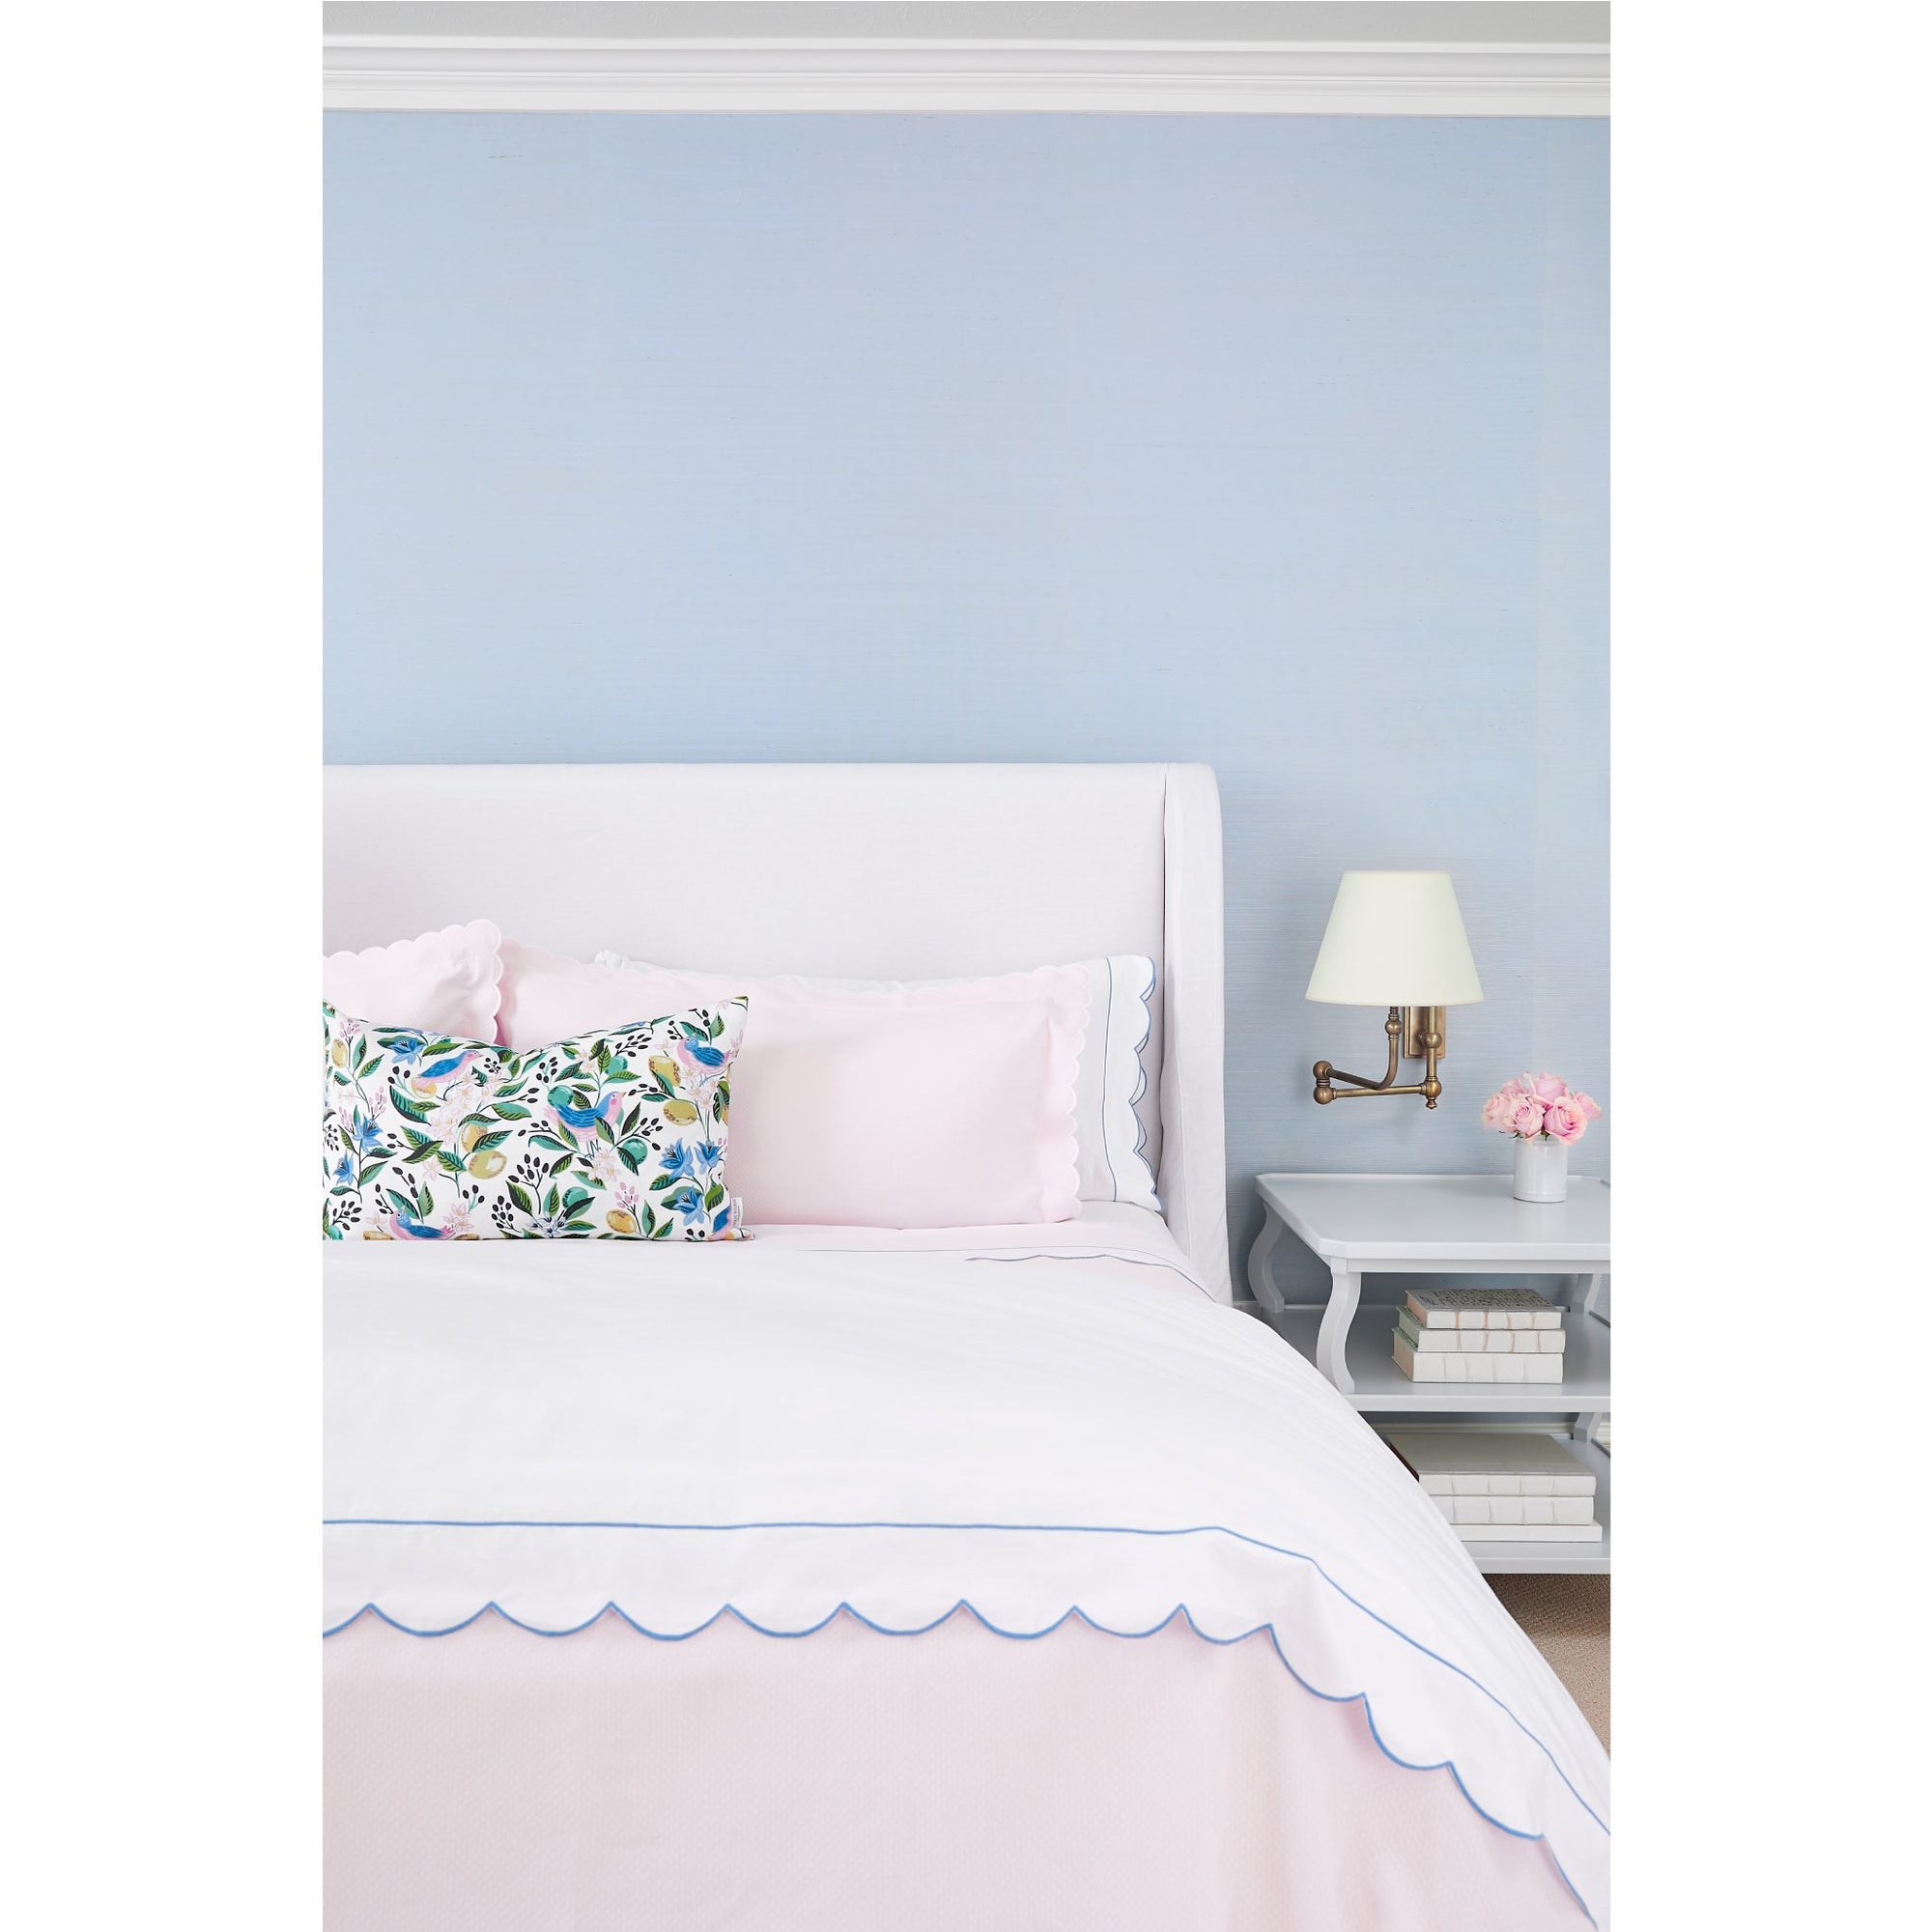 Grasscloth Wallpaper in Sky Blue in Bedroom